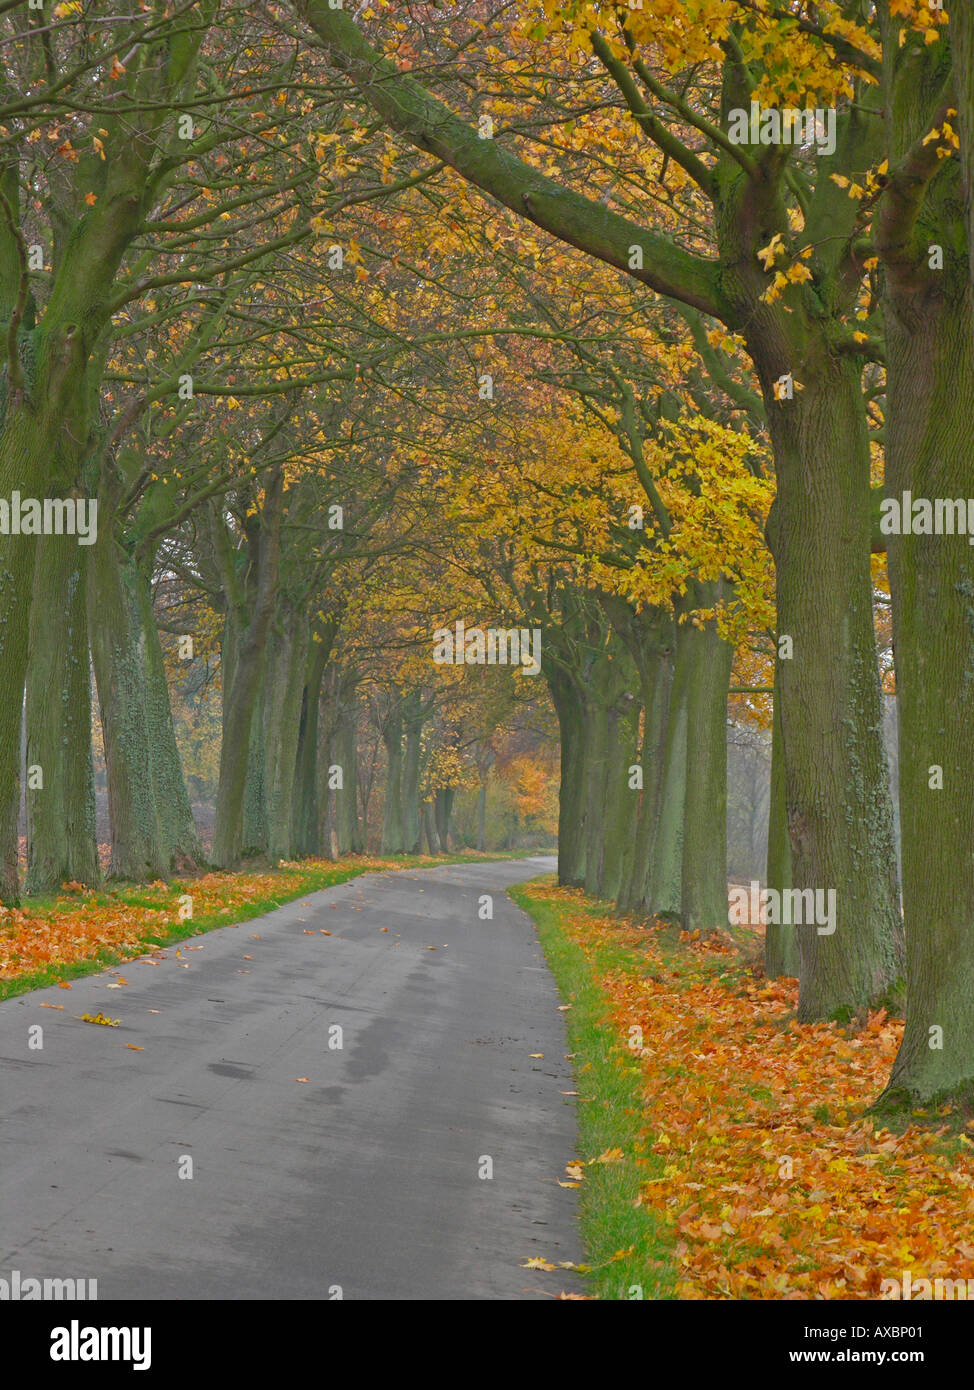 gerade leer Land Straße Avenue im Herbst mit Bäumen in bunten Blättern Stockfoto